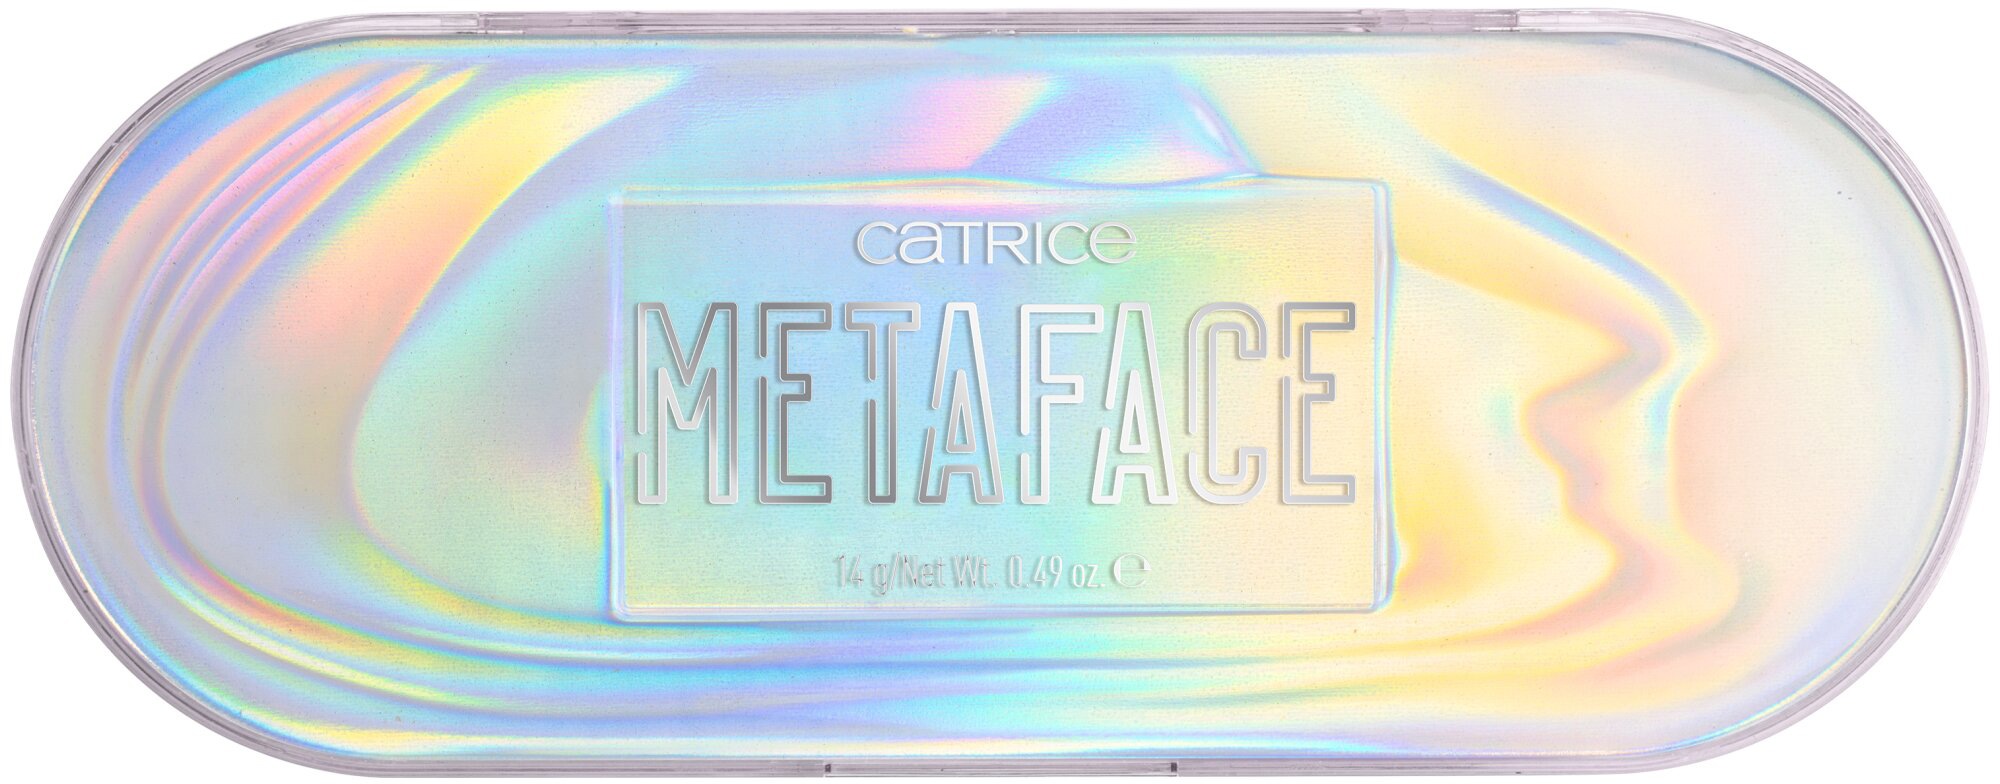 Eyeshadow bei Catrice unterschiedlichen Augen-Make-Up Palette«, mit OTTOversand »METAFACE Effekten Lidschatten-Palette